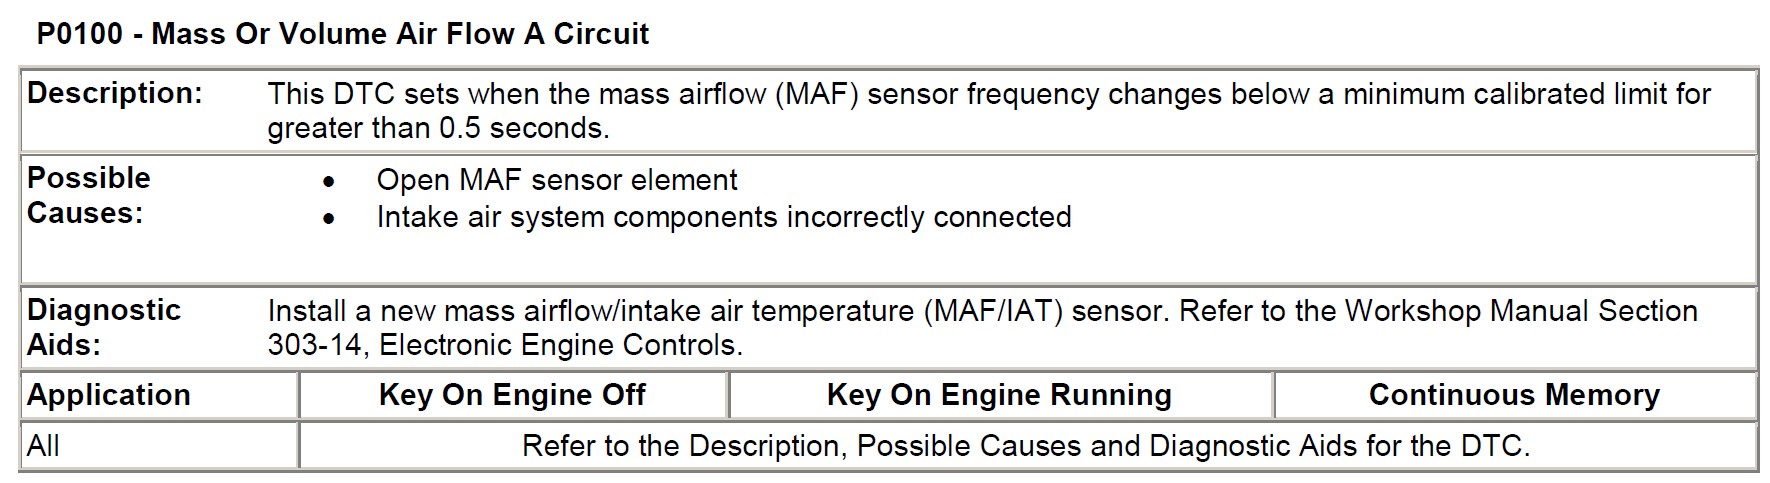 P0100 - Mass Or Volume Air Flow A Circuit.jpg